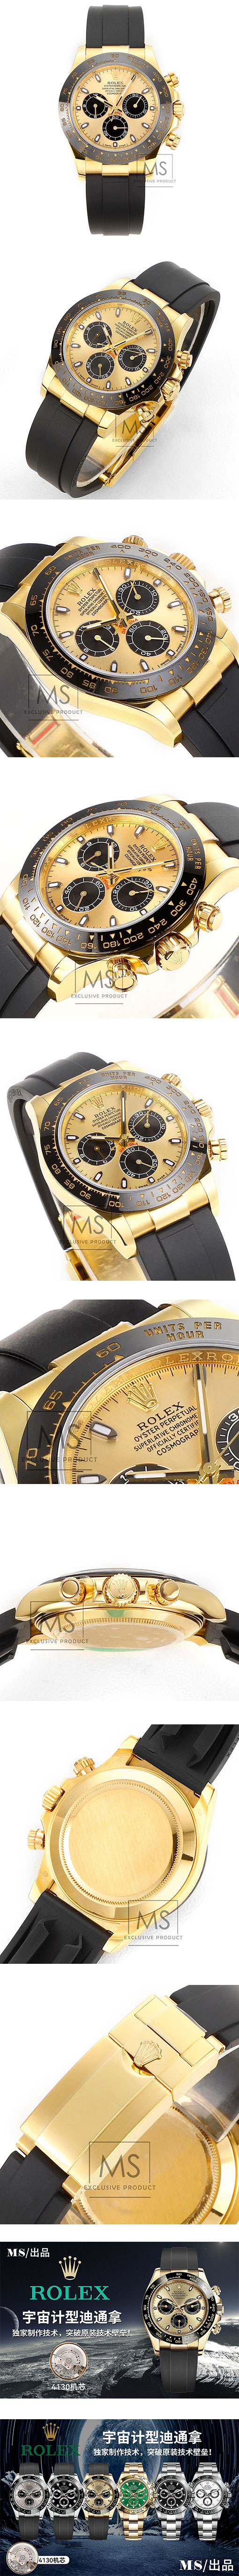 最高級ROLEX コピー時計 デイトナ 116518LN ゴールド/ブラック 7750改良超薄い4130ムーブメント MS工場製 シャンパン文字盤